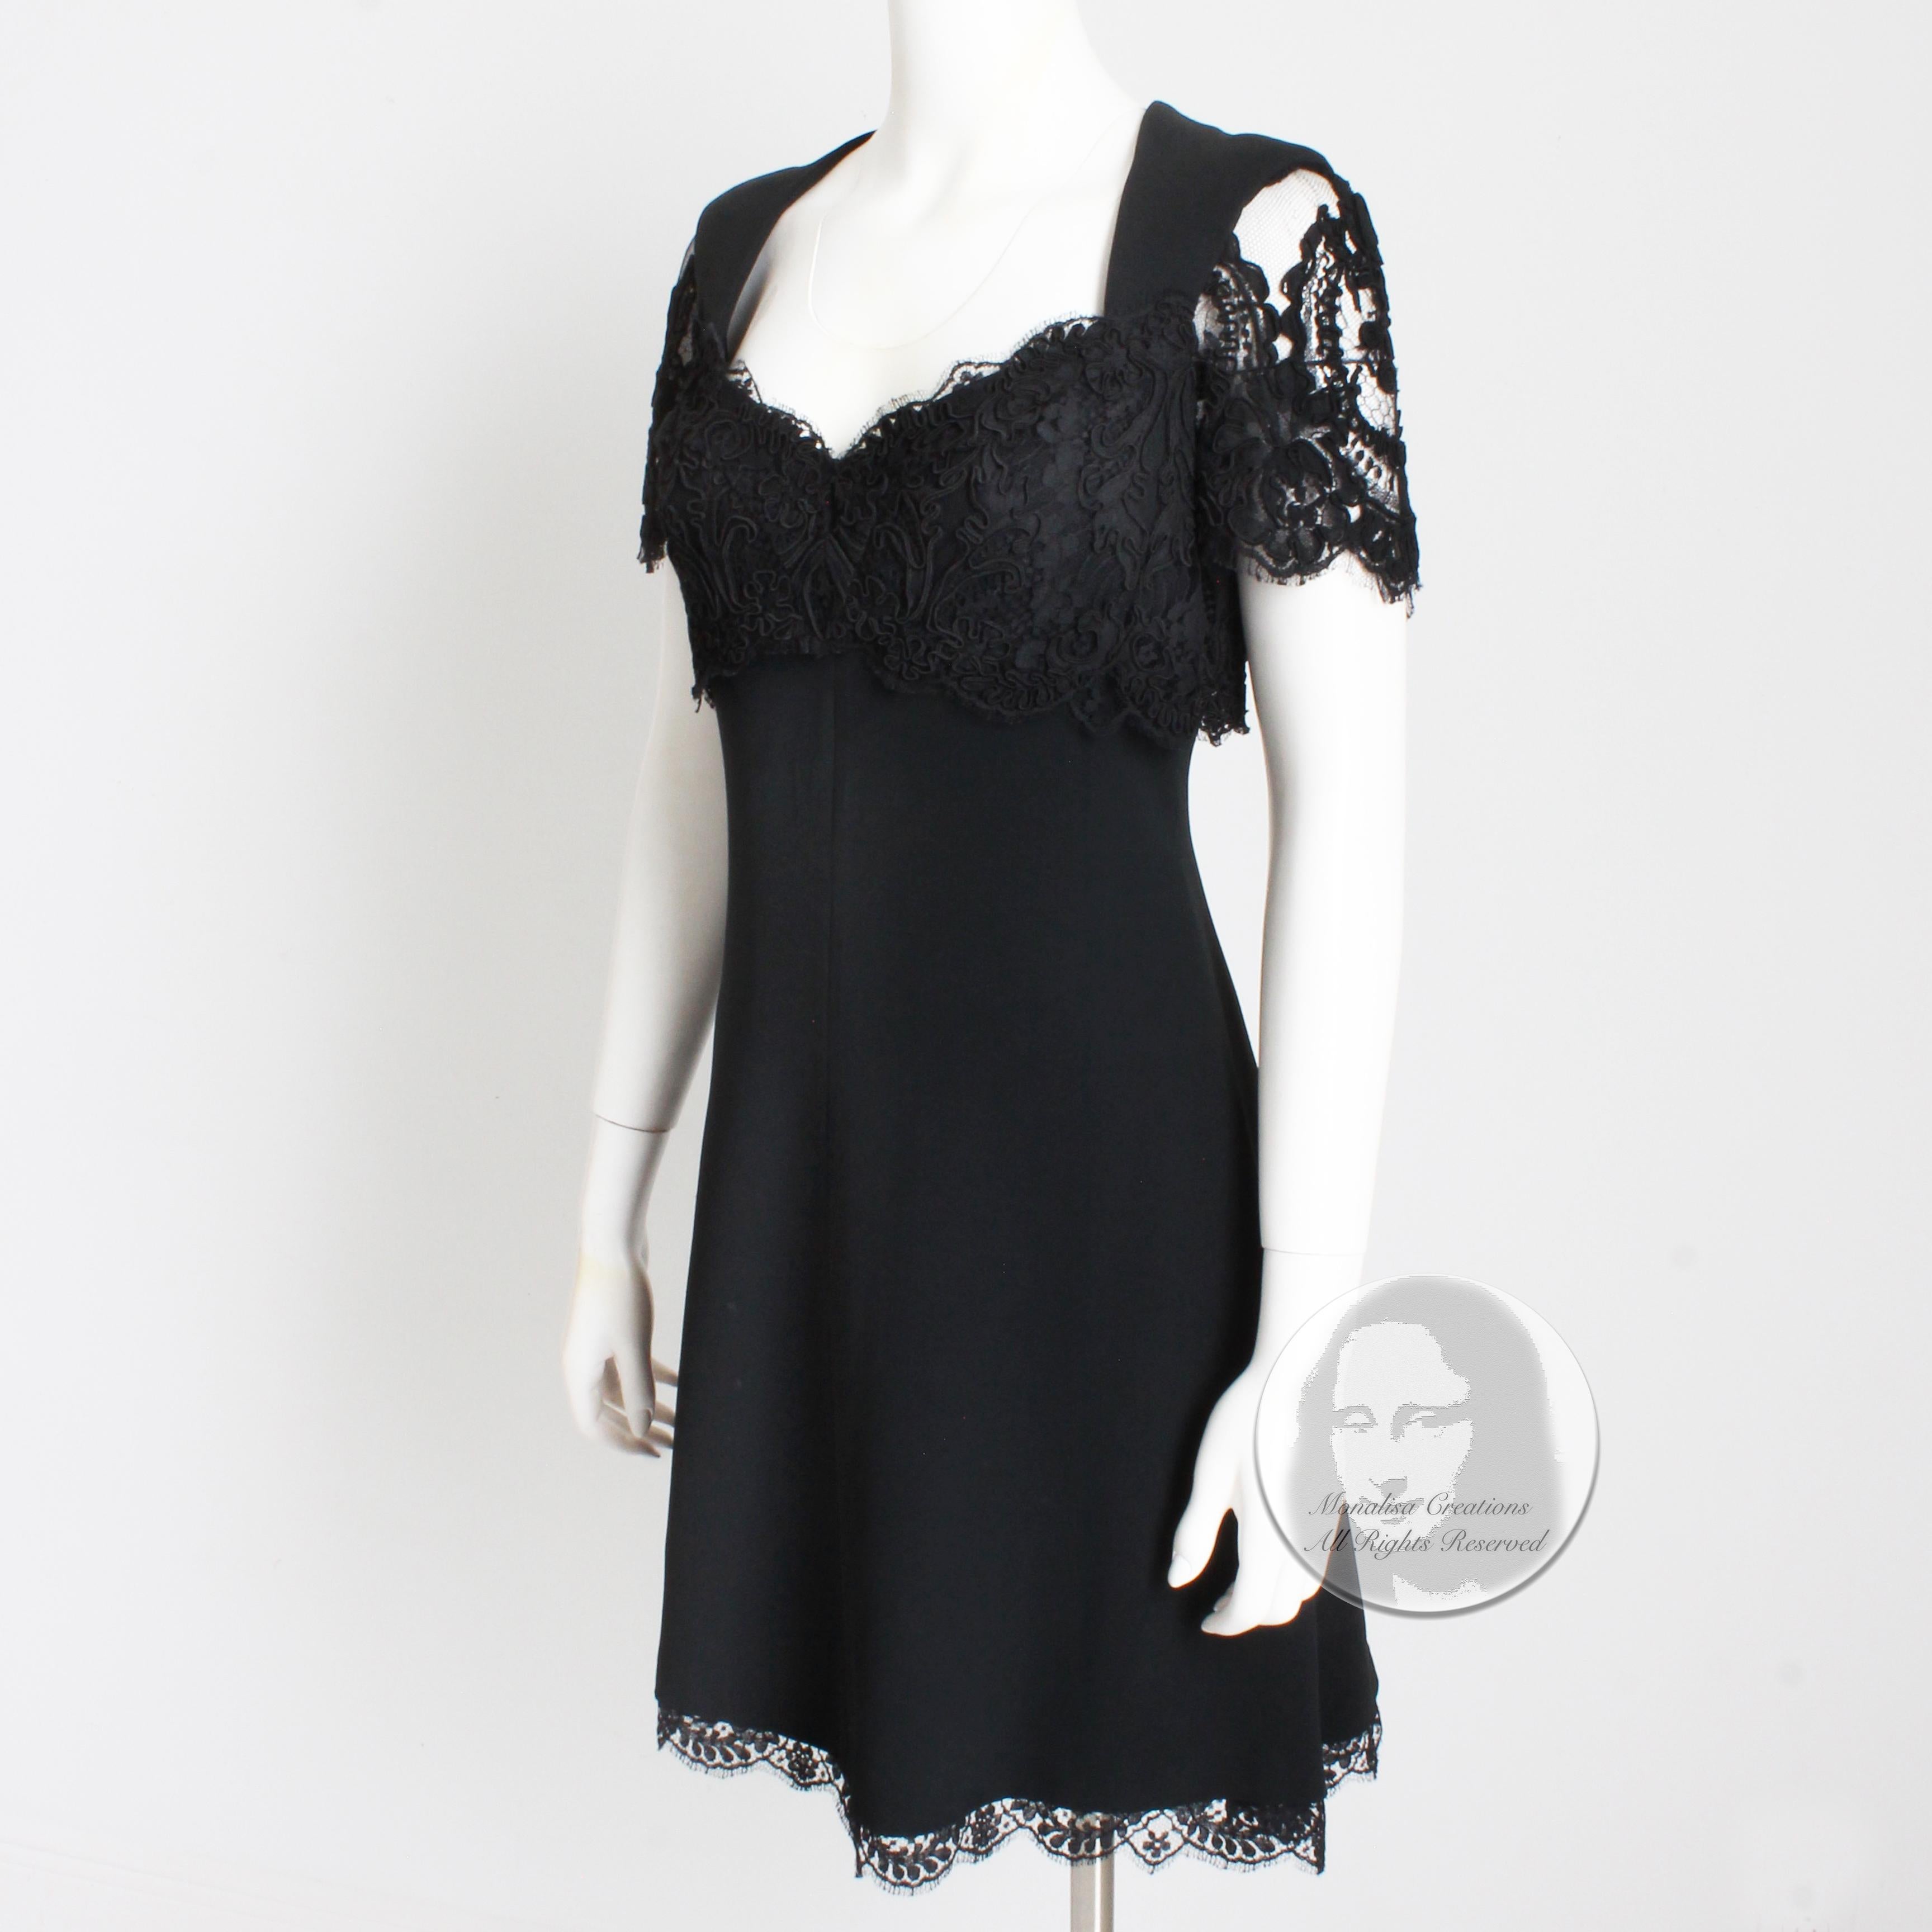 Louis Feraud Dress Black Lace Cocktail Little Black Dress Evening Party Vintage  For Sale 1